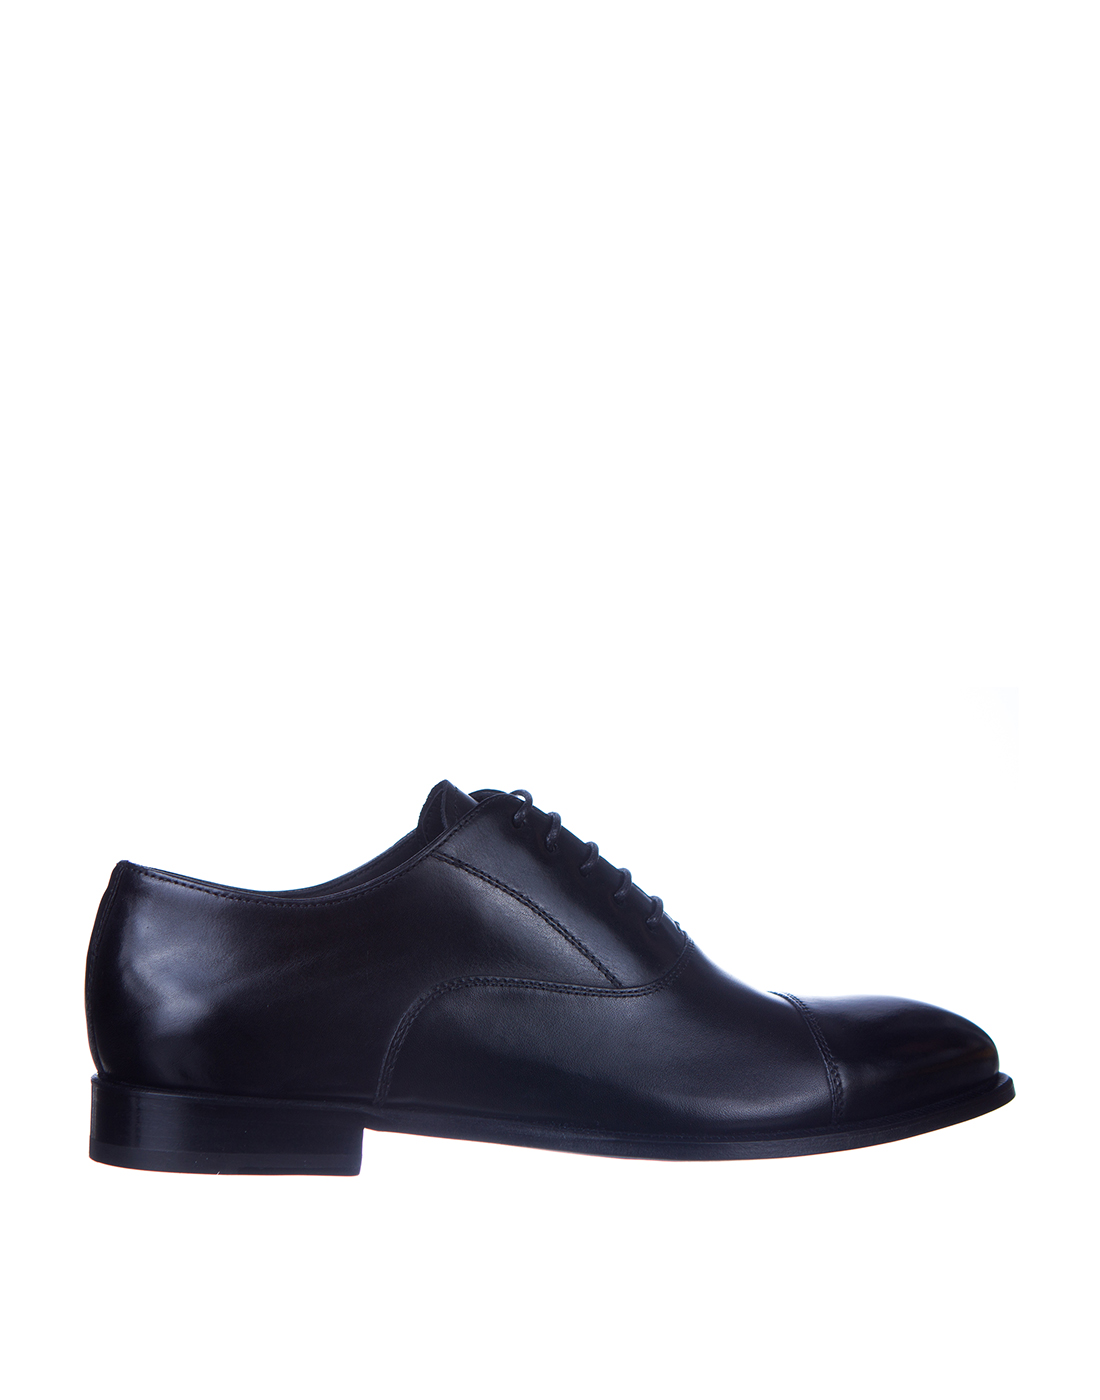 Туфли черные мужские Brecos S10509 BLACK-1